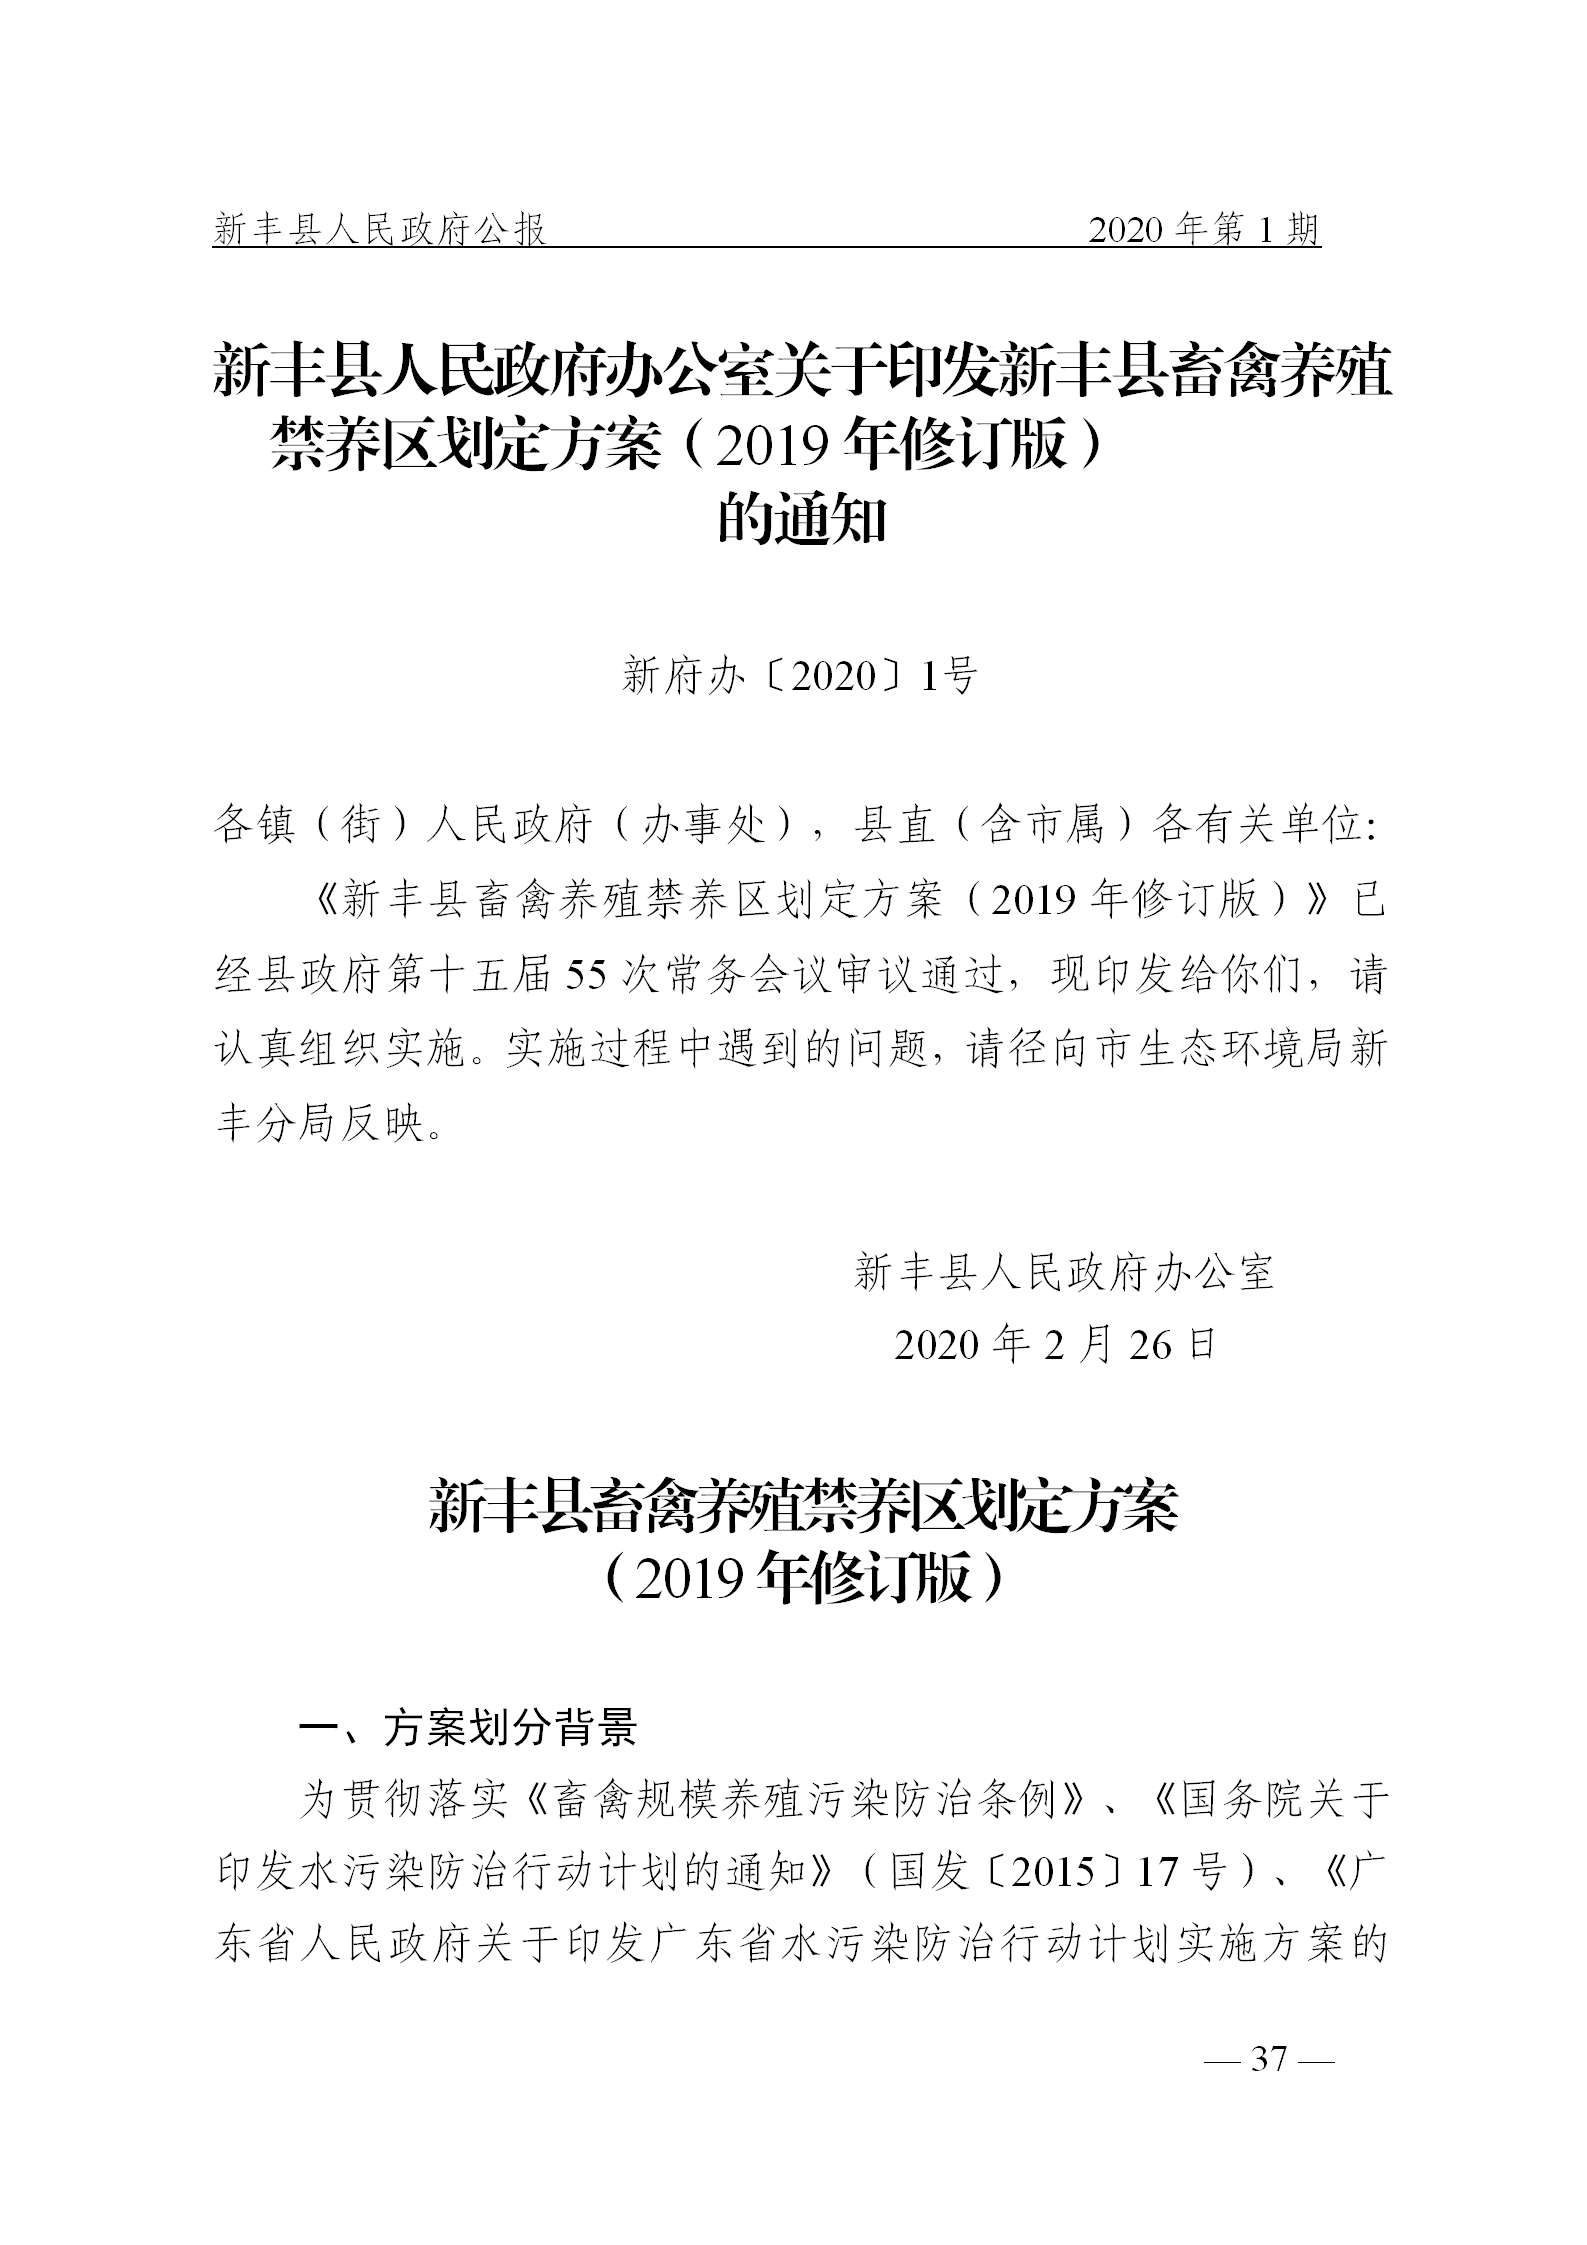 《新丰县人民政府公报》2020年第1期(1)_37.png